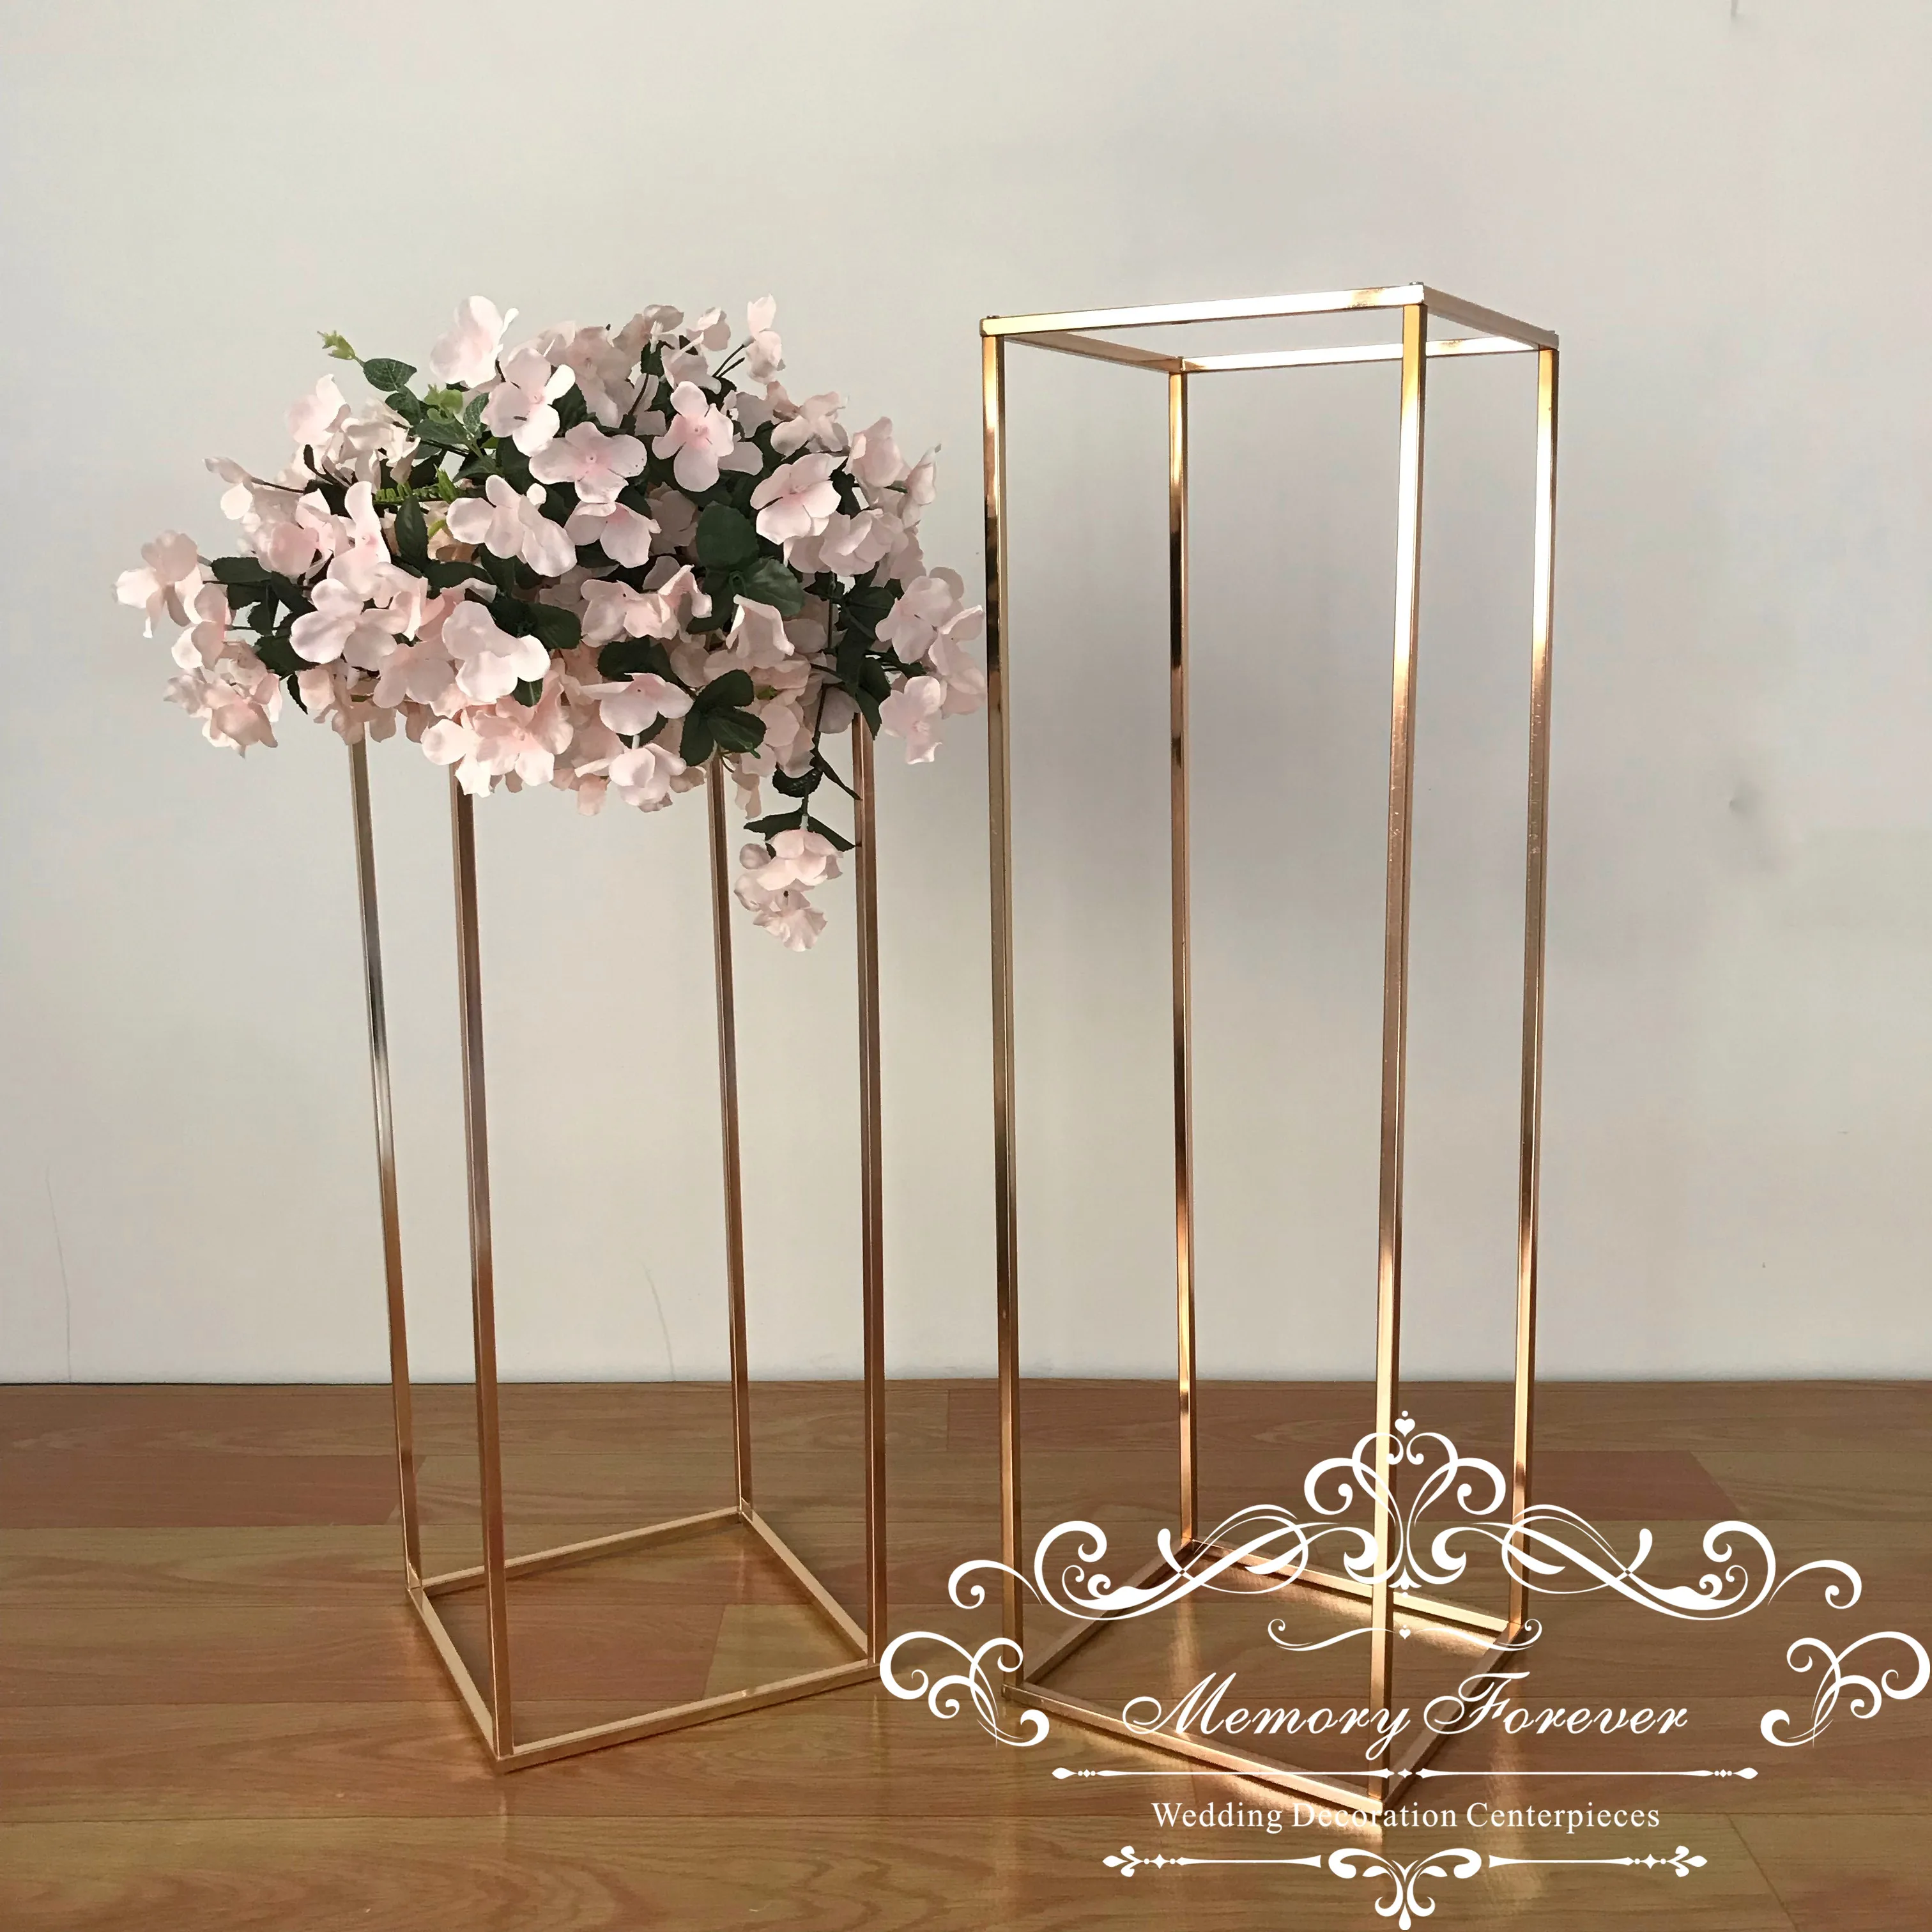 31,5 дюйма высотой 9,84 дюйма диаметром золотые напольные вазы цветы вазаметаллическая столбик для свадебного центрального стола стеллаж длядемонстрации свадьбы